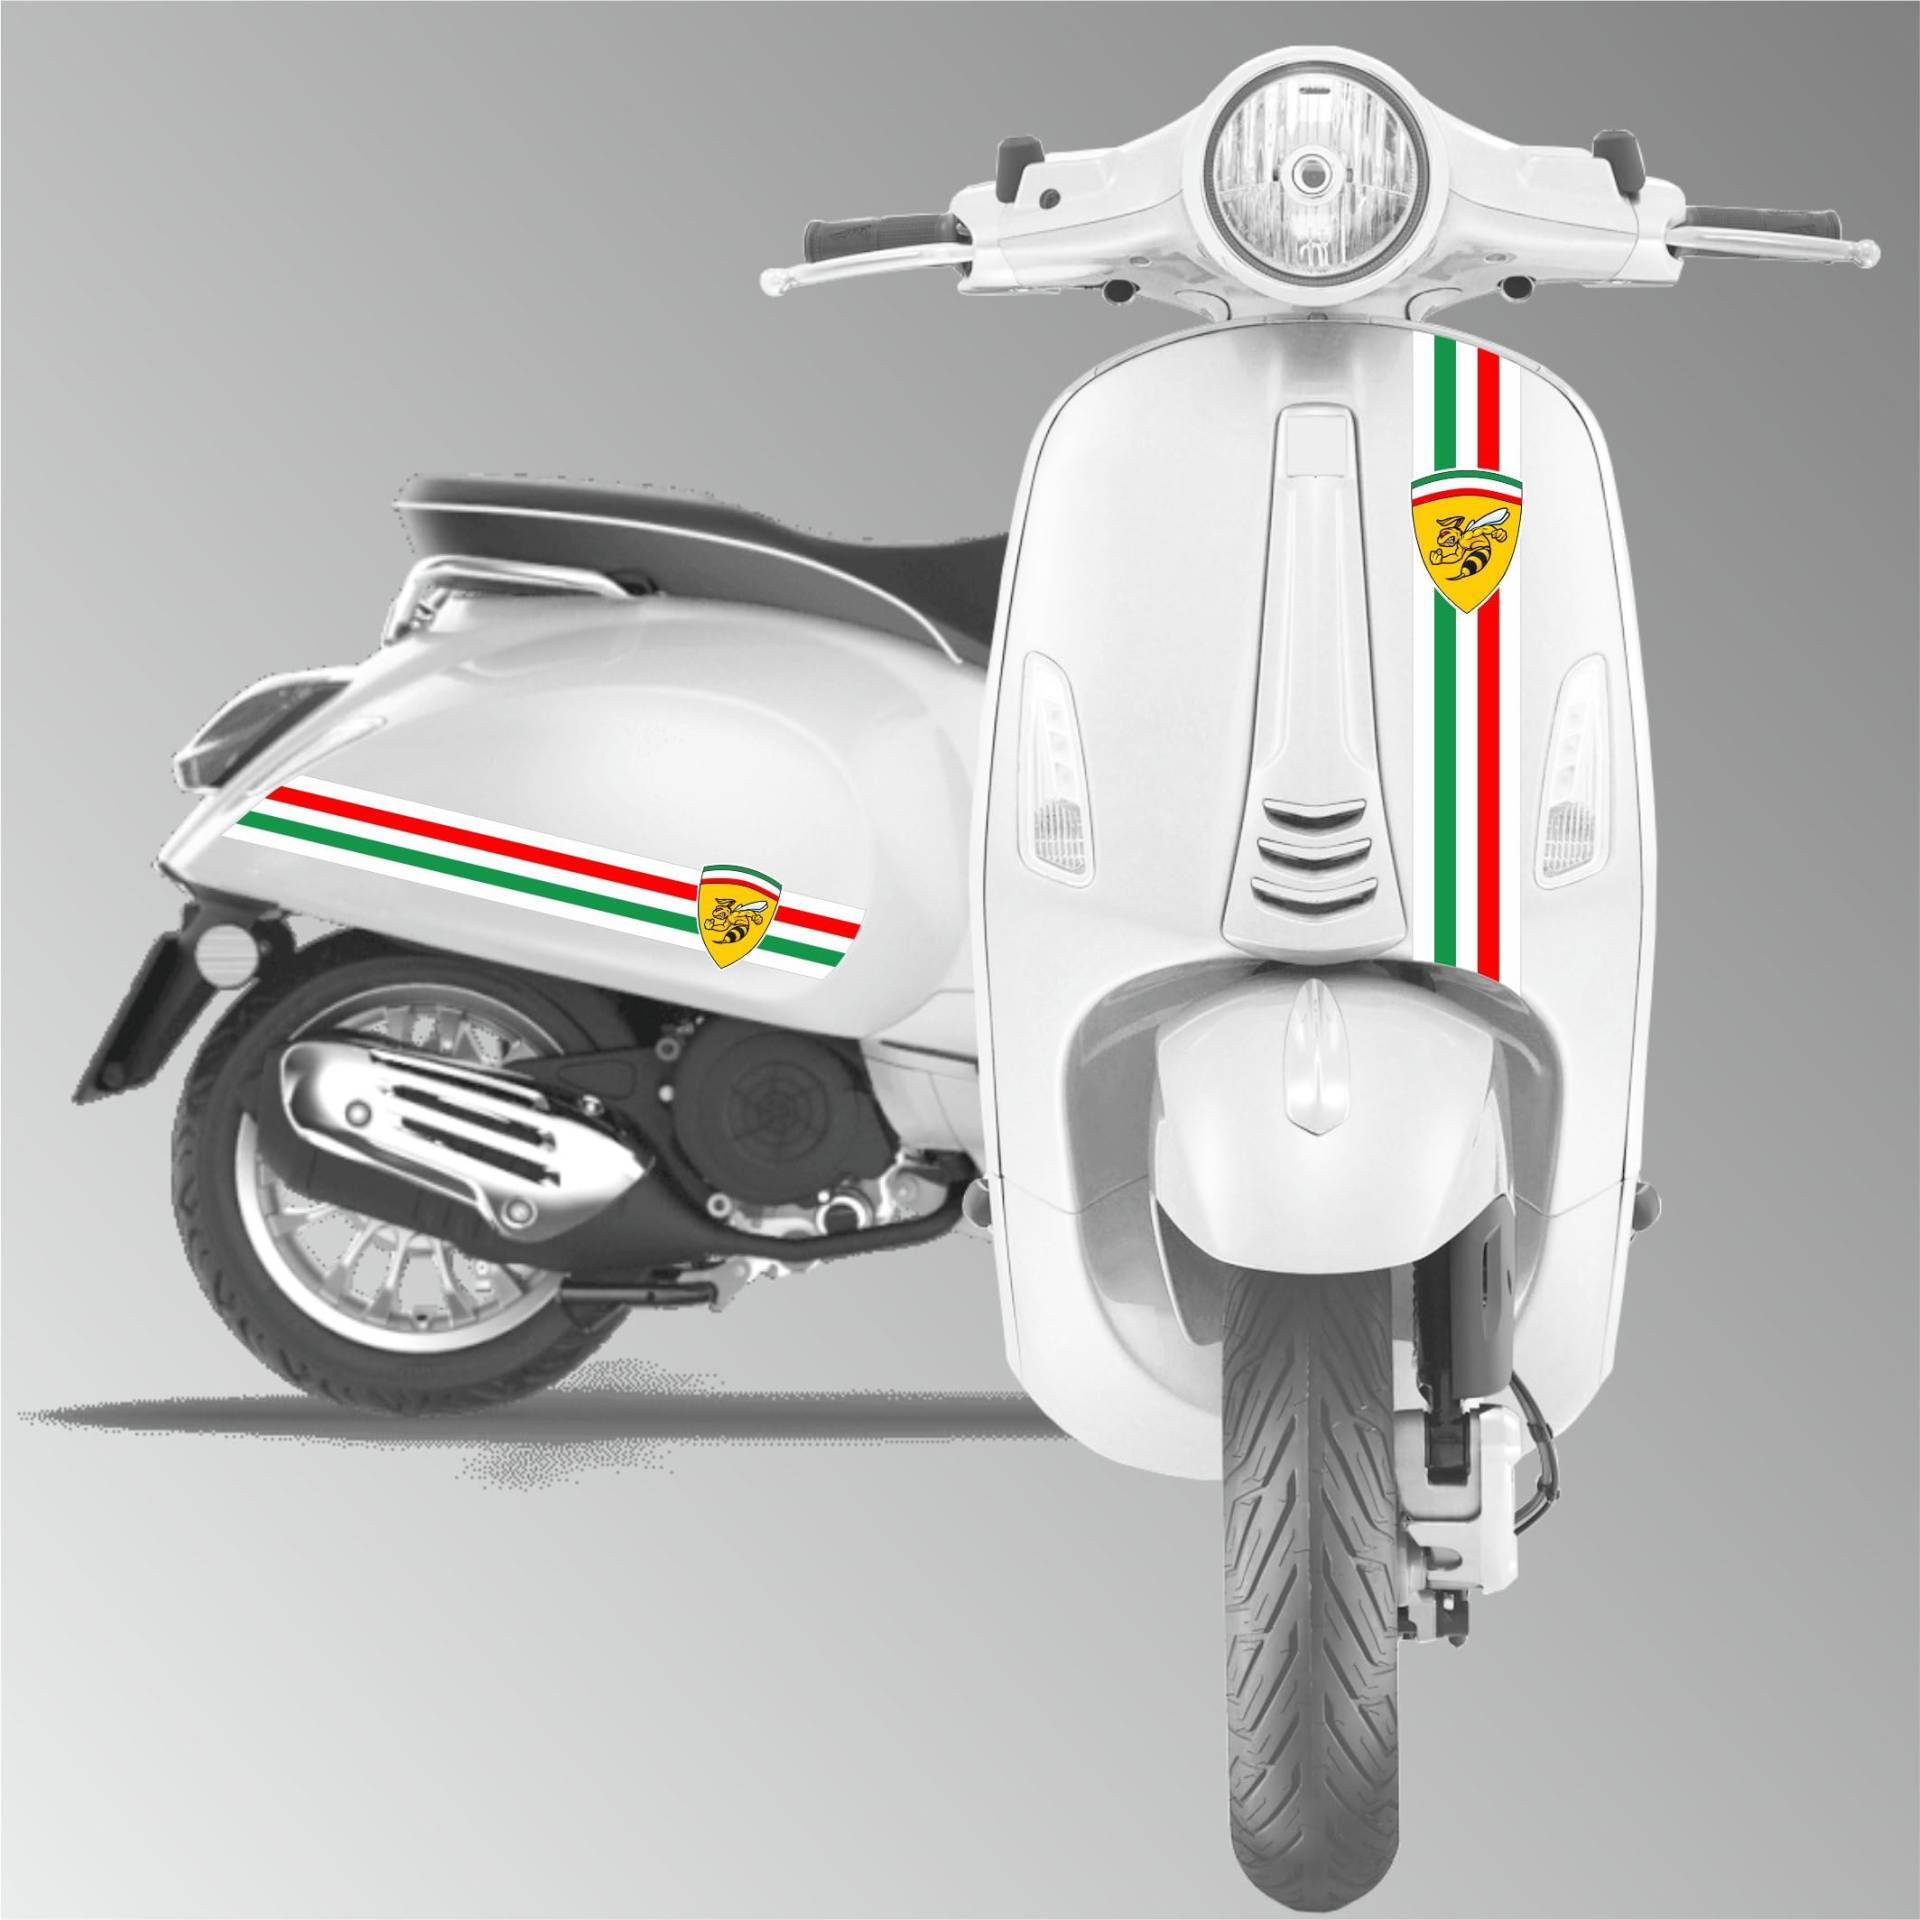 Grafik-Set mit 3 kompletten Aufklebern, dreifarbig, kompatibel mit Piaggio Vespa GTV GTS P150 Sprint Code 2129 von Generico